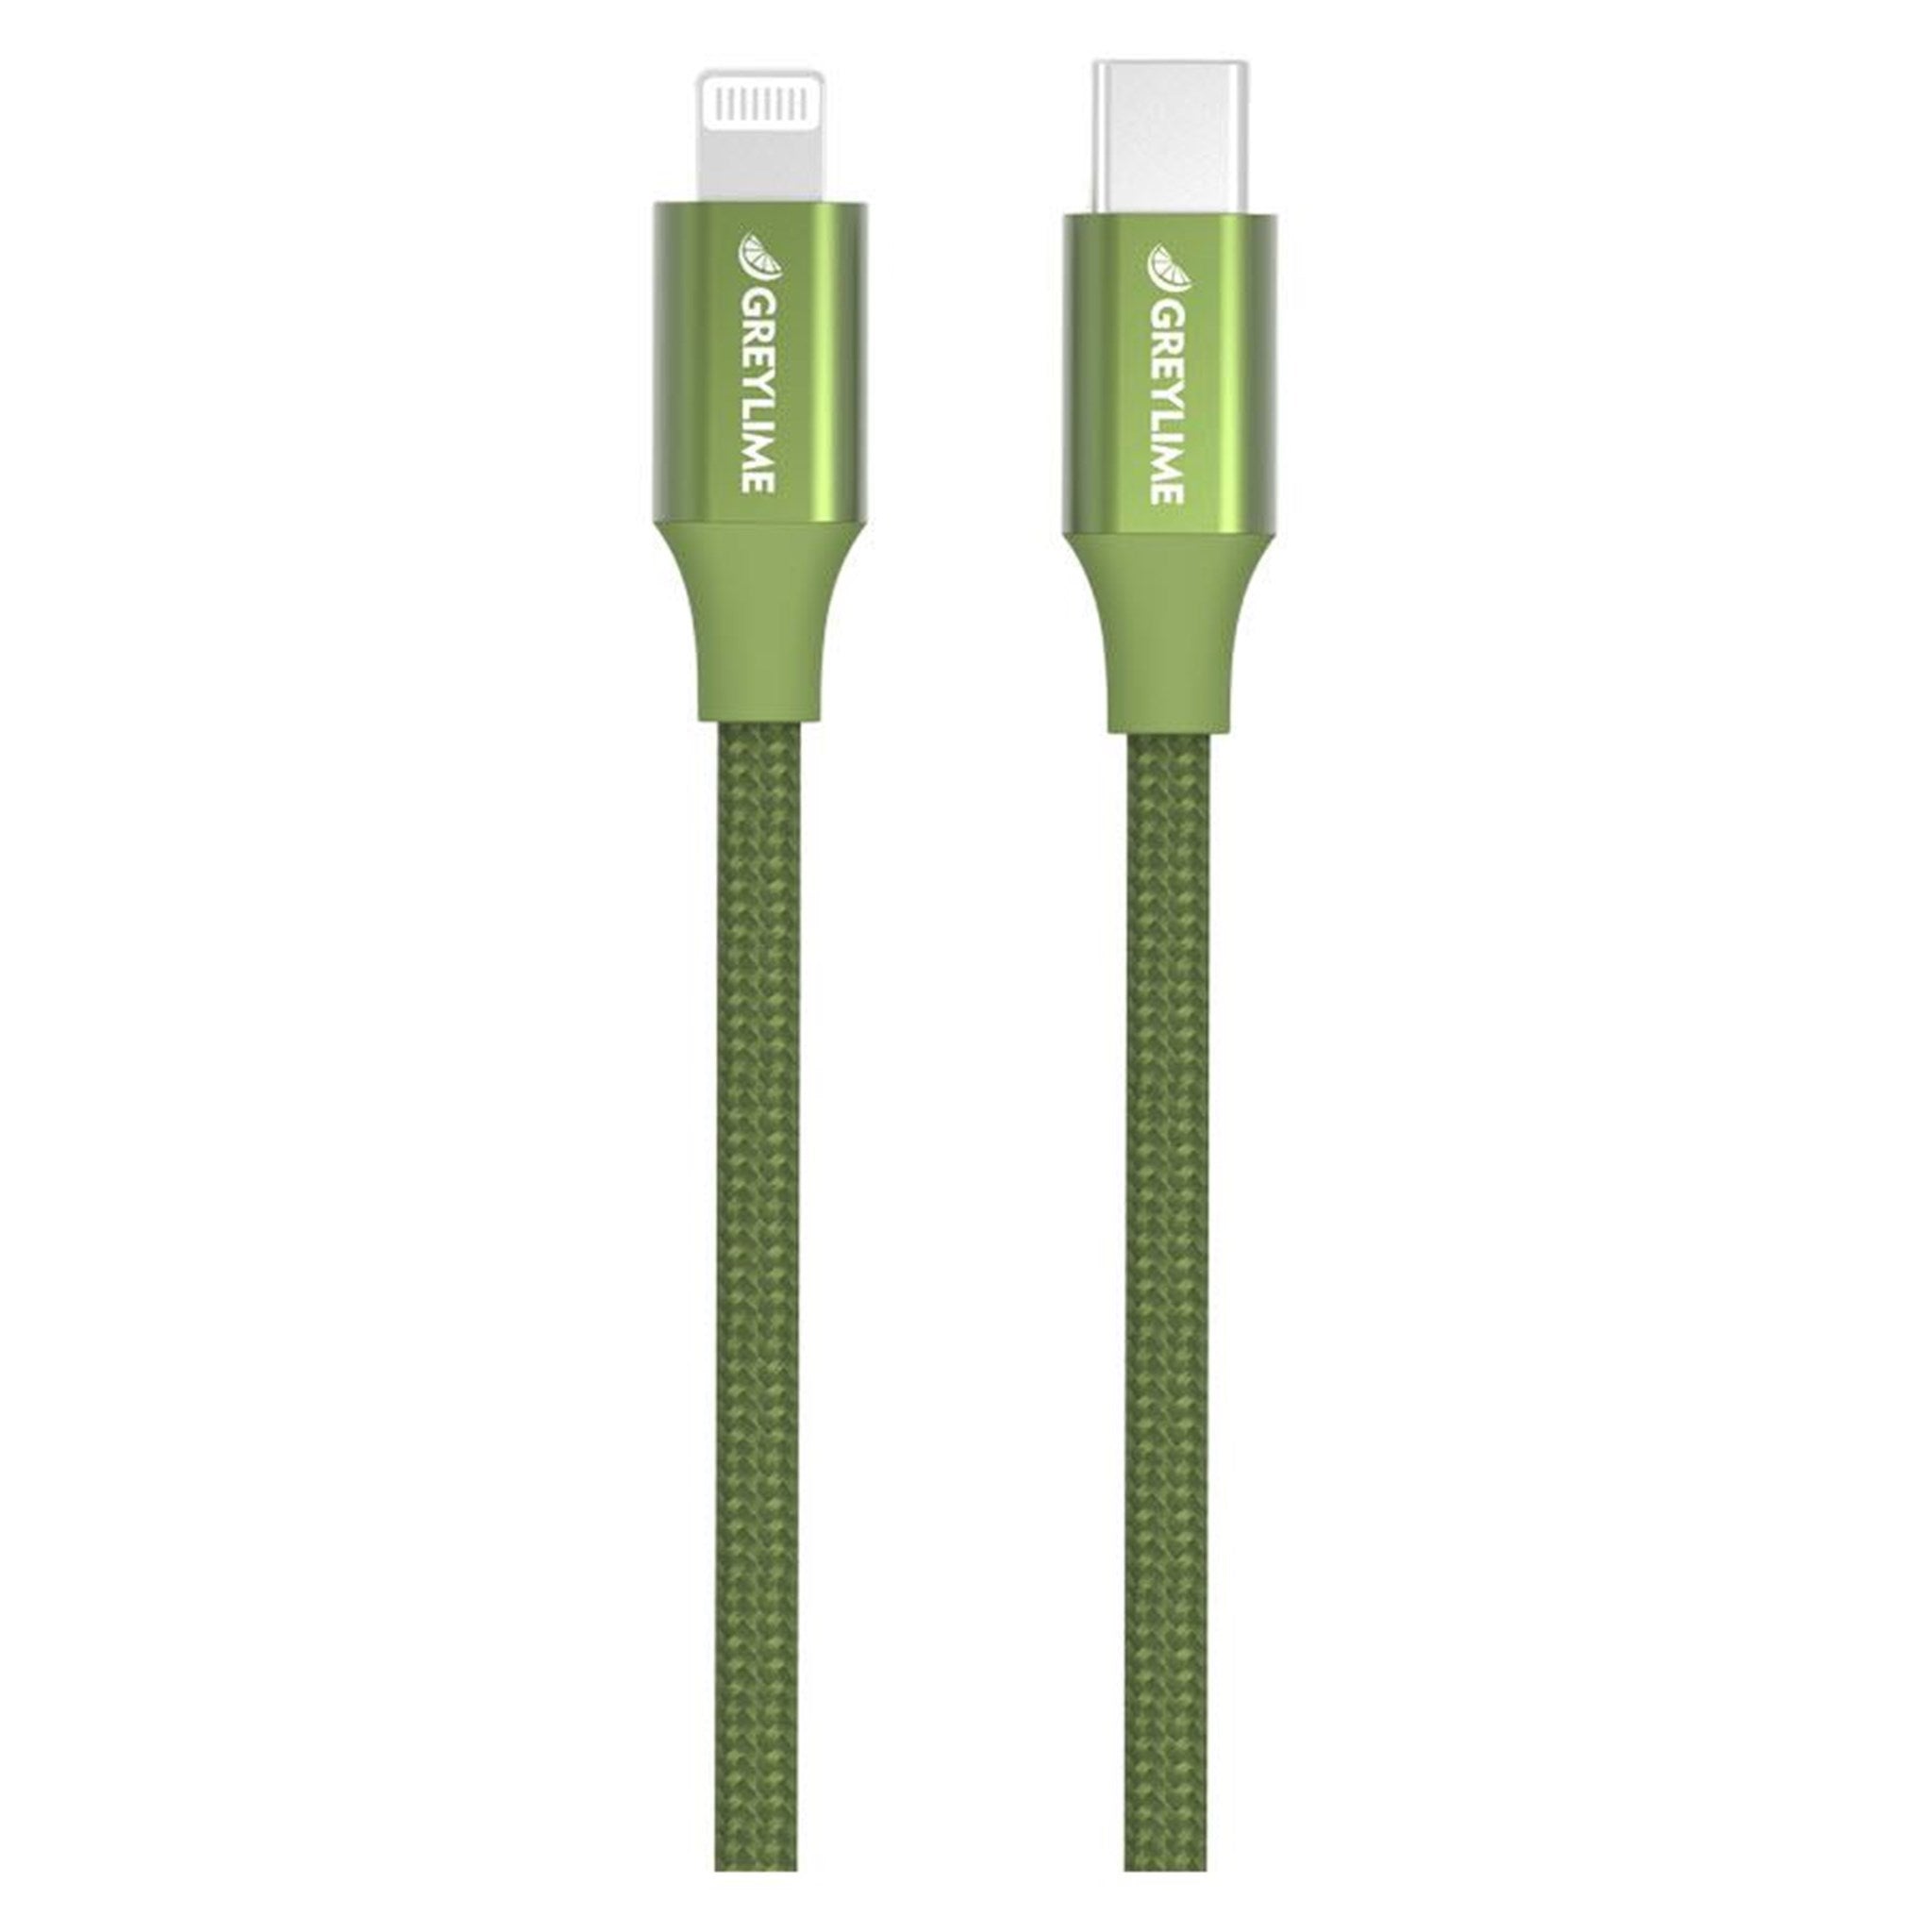 Billede af GreyLime Braided USB-C til MFi Lightning Kabel Grøn 2 m hos GreyLime